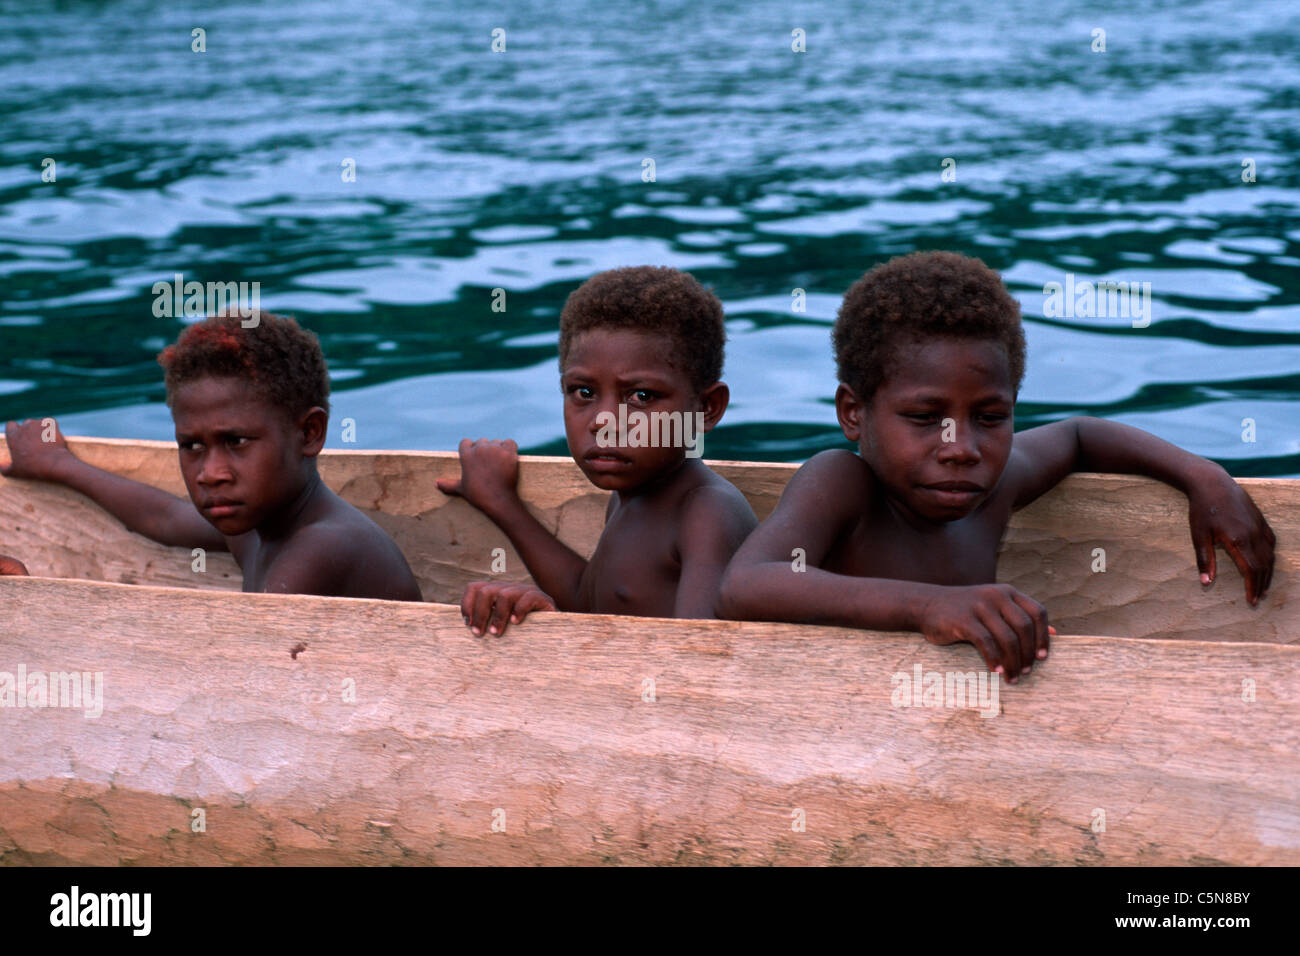 Children of Vitu Islands in Trigger Boat, Vitu Islands, Bismarck Archipelago, Papua New Guinea Stock Photo